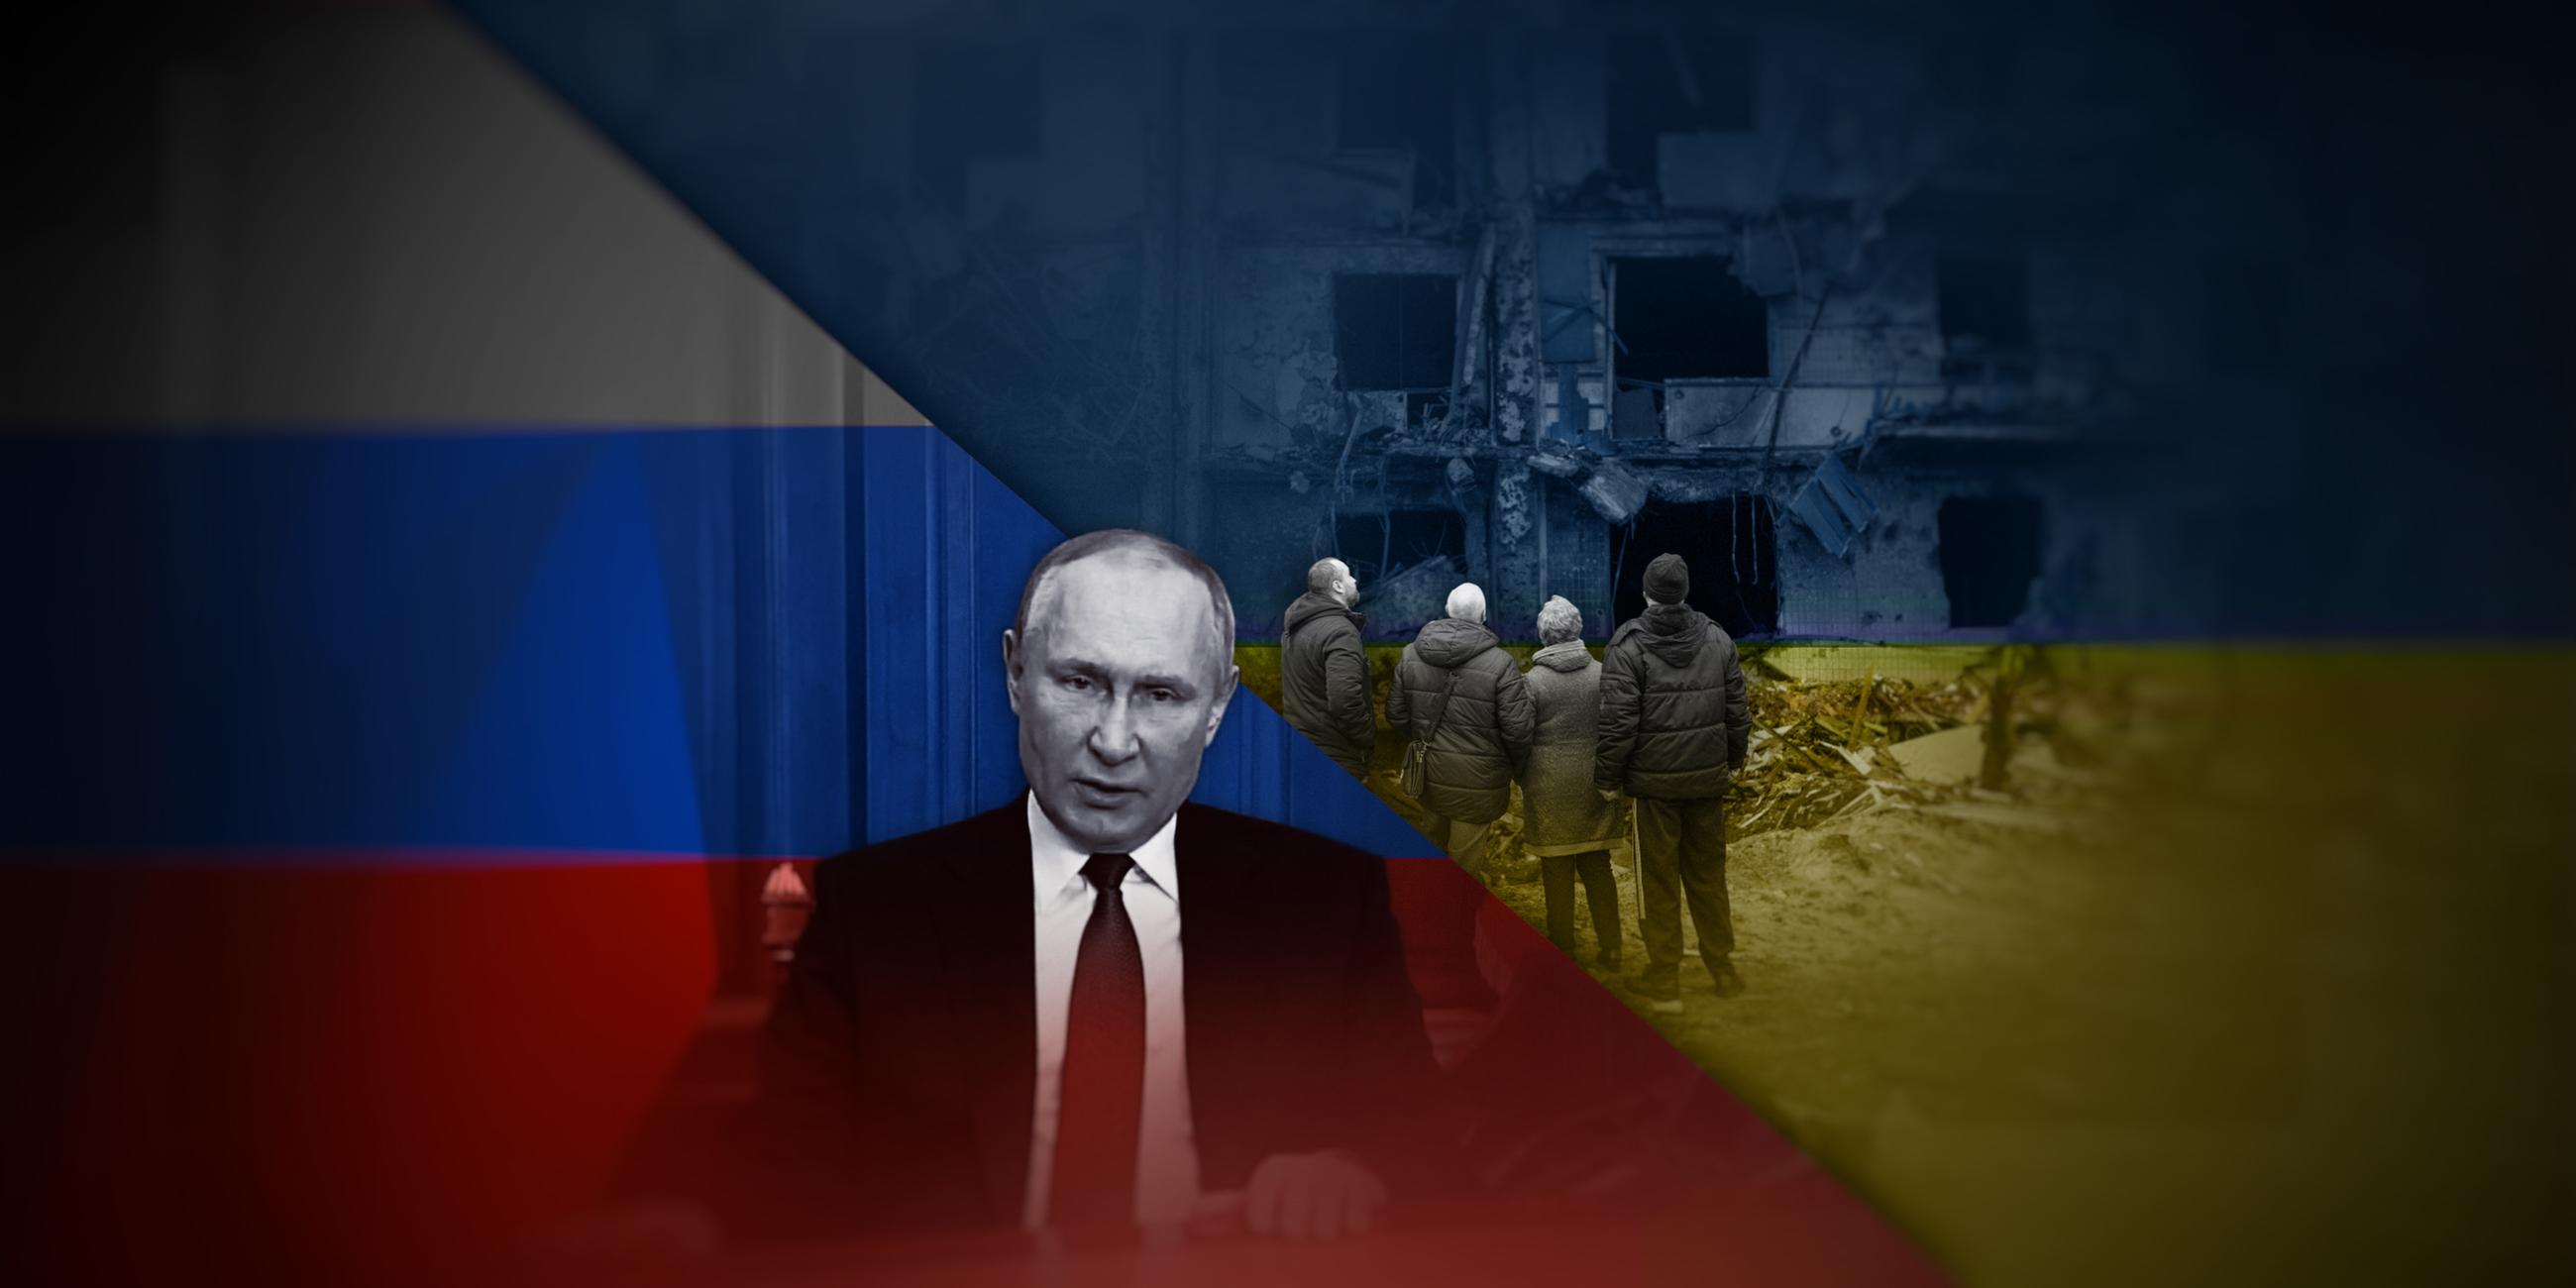 Die Montage zeigt in der linken Bildhälfte Russlands Präsidenten Wladimir Putin vor russischer Flagge. In der rechten Bildhälfte sind mehrere Menschen zu sehen, die vor einer zerstörten Häuserfassade stehen. Die rechte Hälfte ist in die Farben der ukrainischen Flagge getaucht.